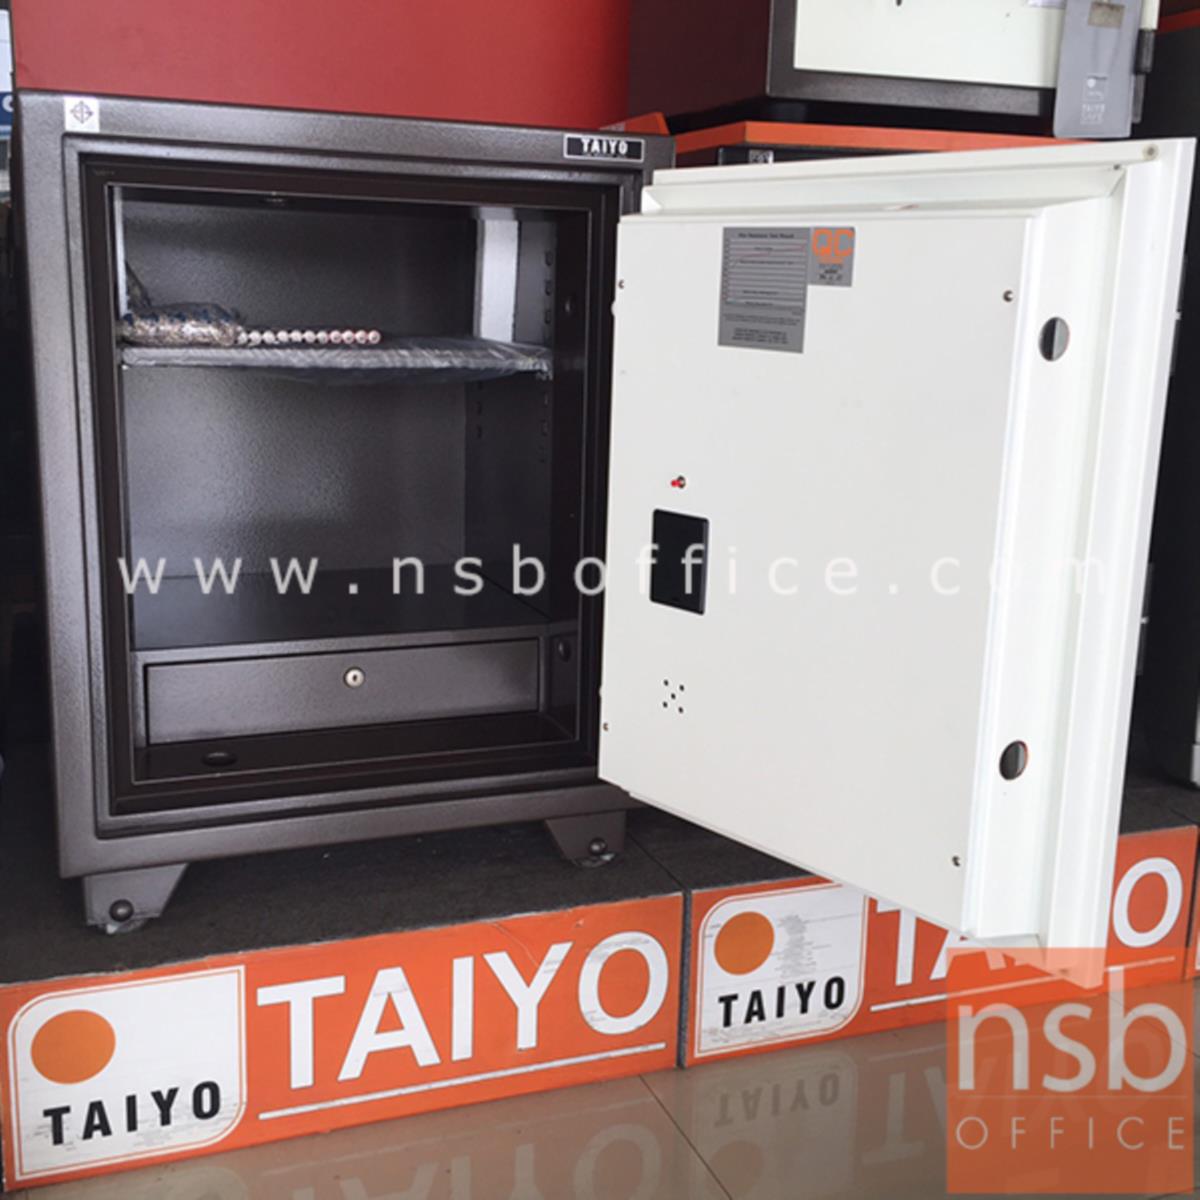 ตู้เซฟ Taiyo ระบบดิจิตอล จอสัมผัส รุ่น 150 กก. 2 กุญแจ 1 รหัส (DTS 760 K2D)   